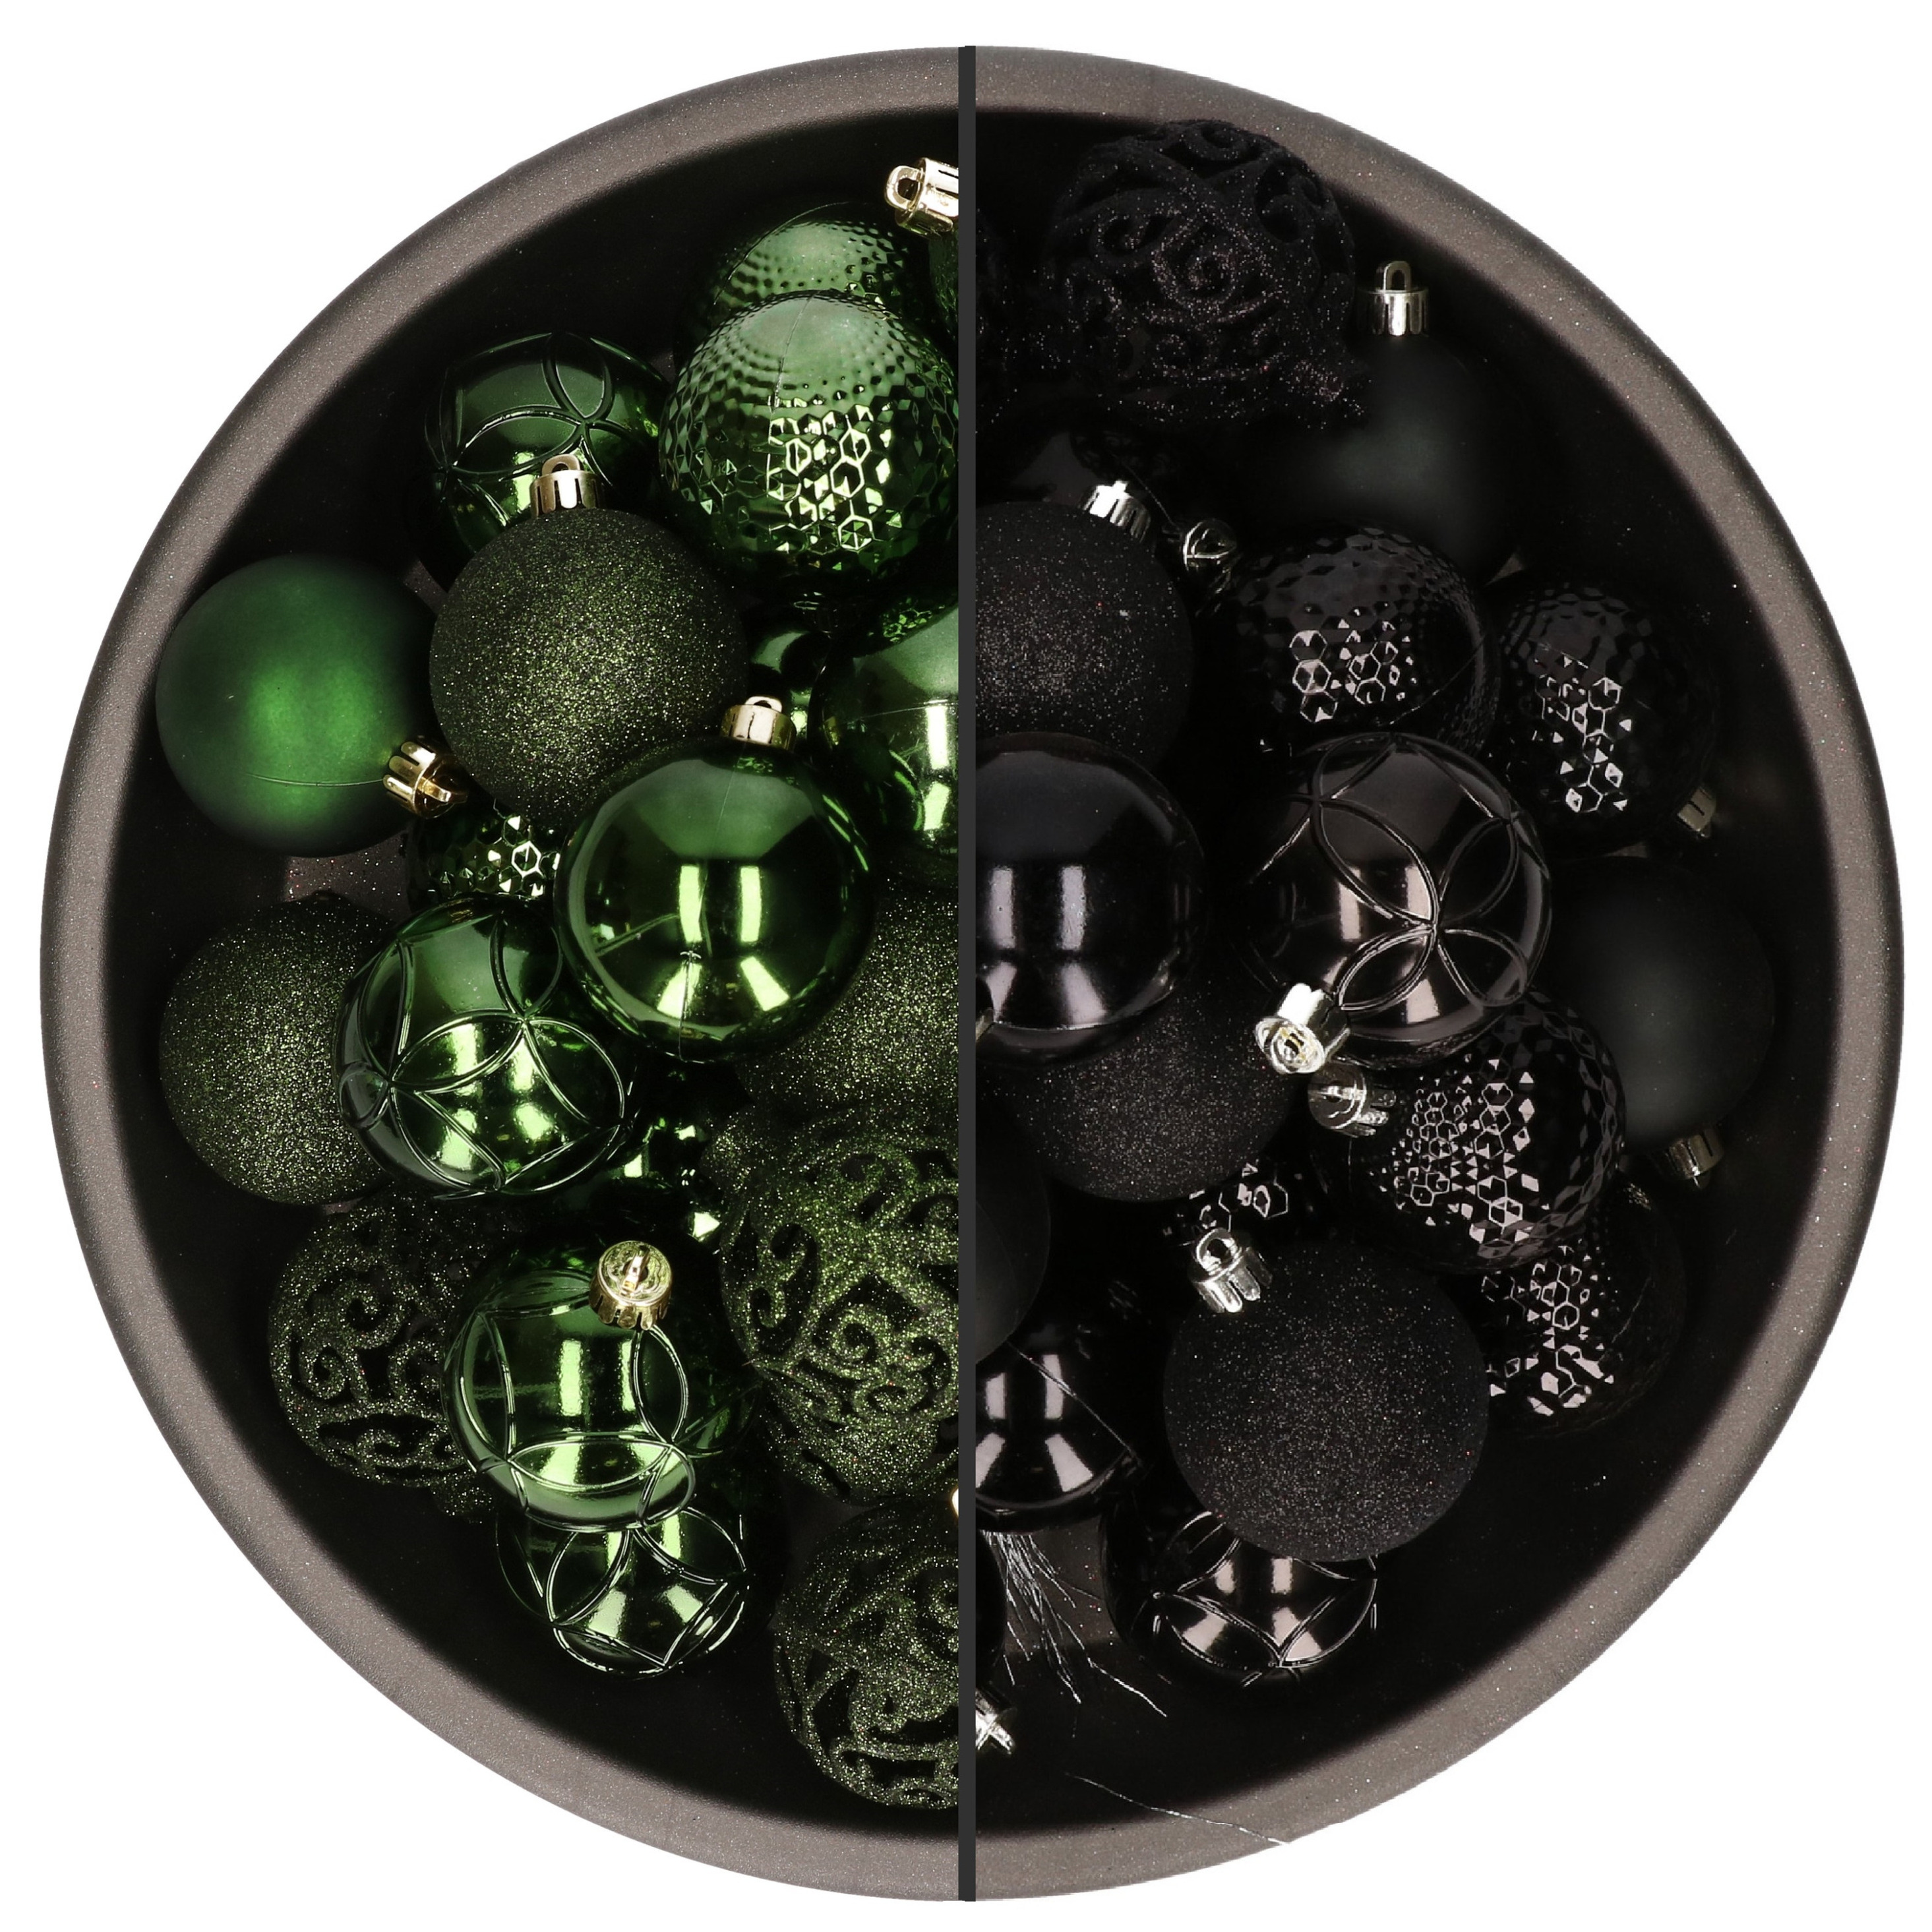 74x stuks kunststof kerstballen mix van zwart en donkergroen 6 cm